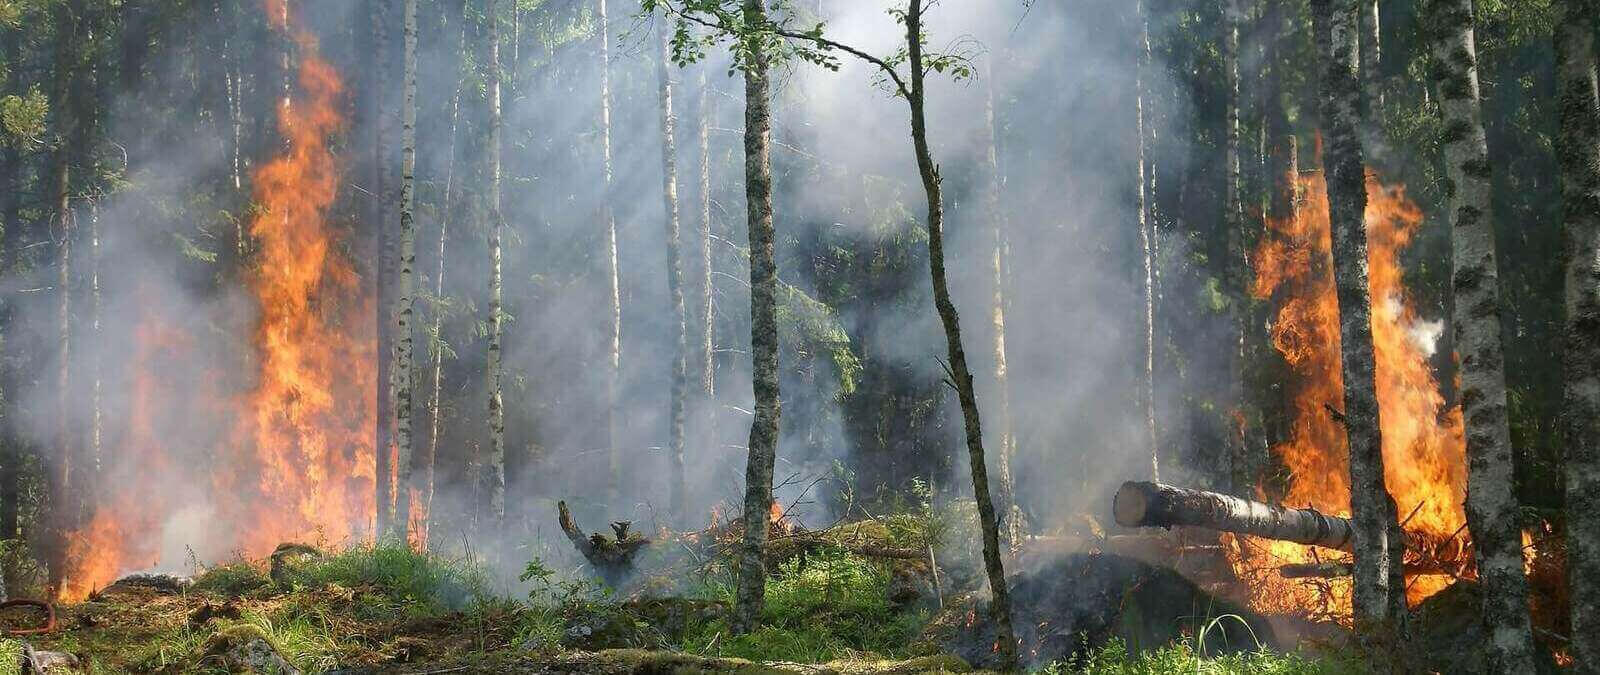 El impacto ambiental de incendios forestales - Maldita.es